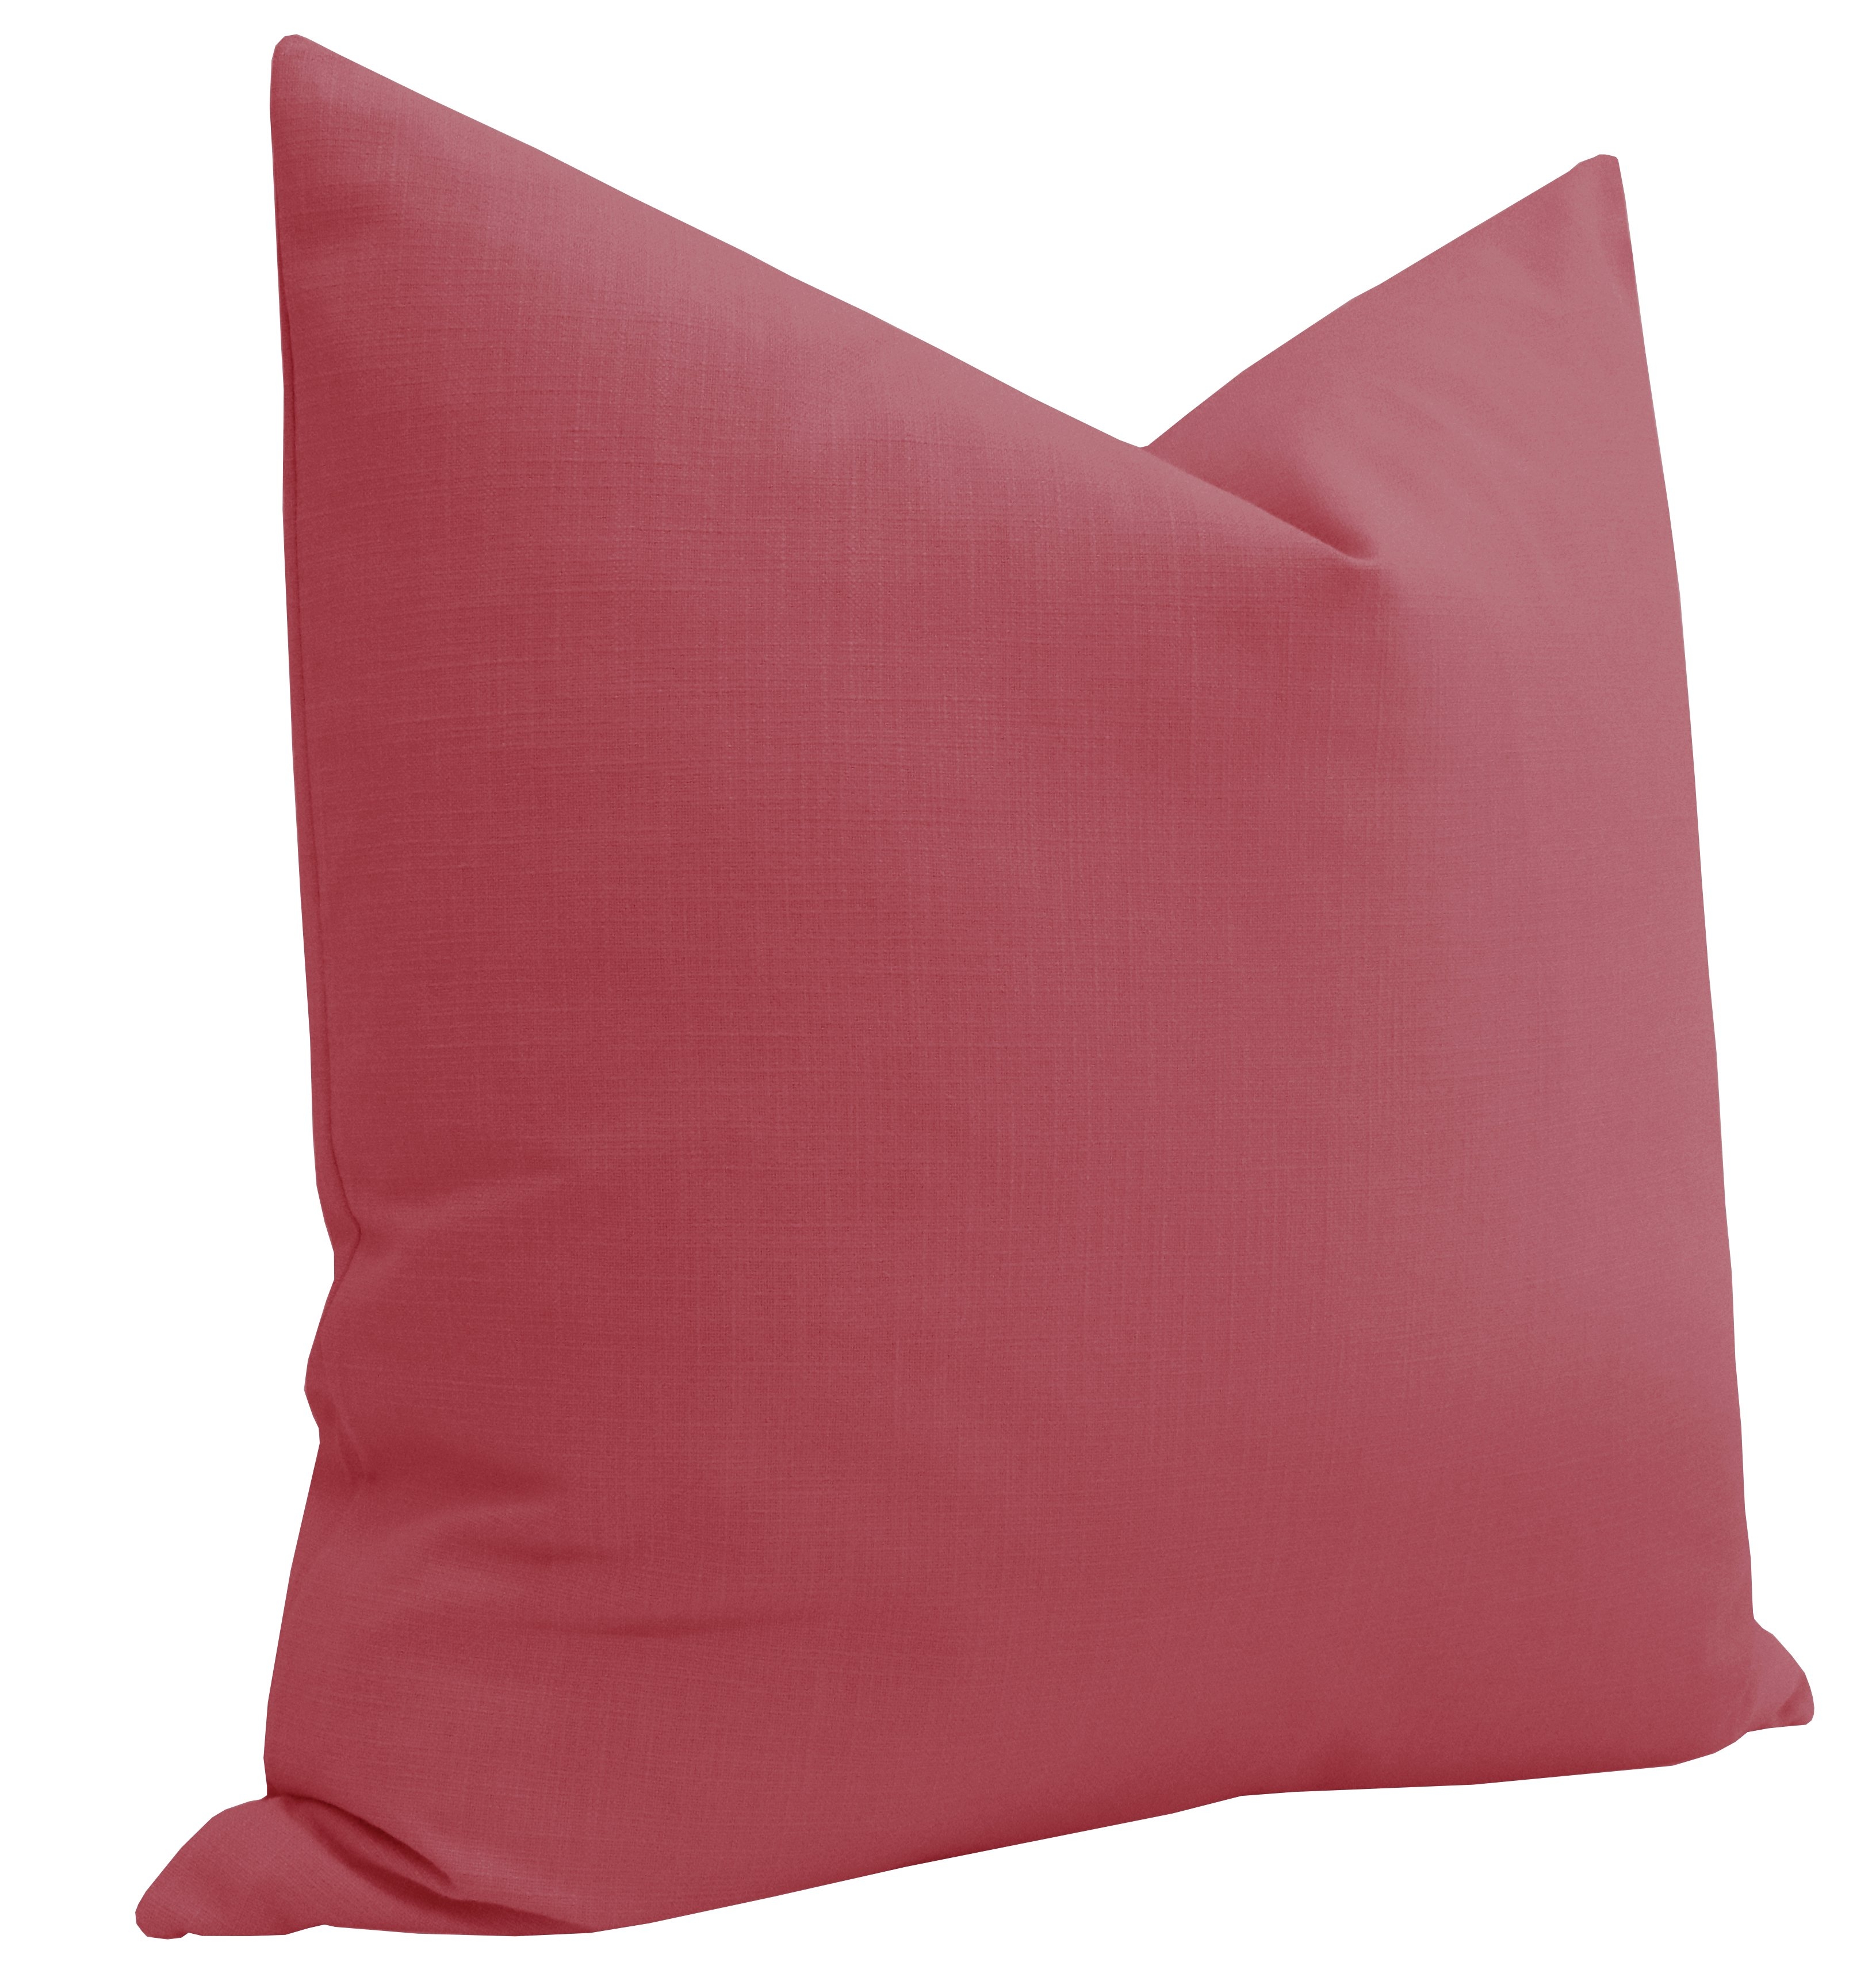 Classic Linen // Rosé Pink - 18" X 18" - Image 1